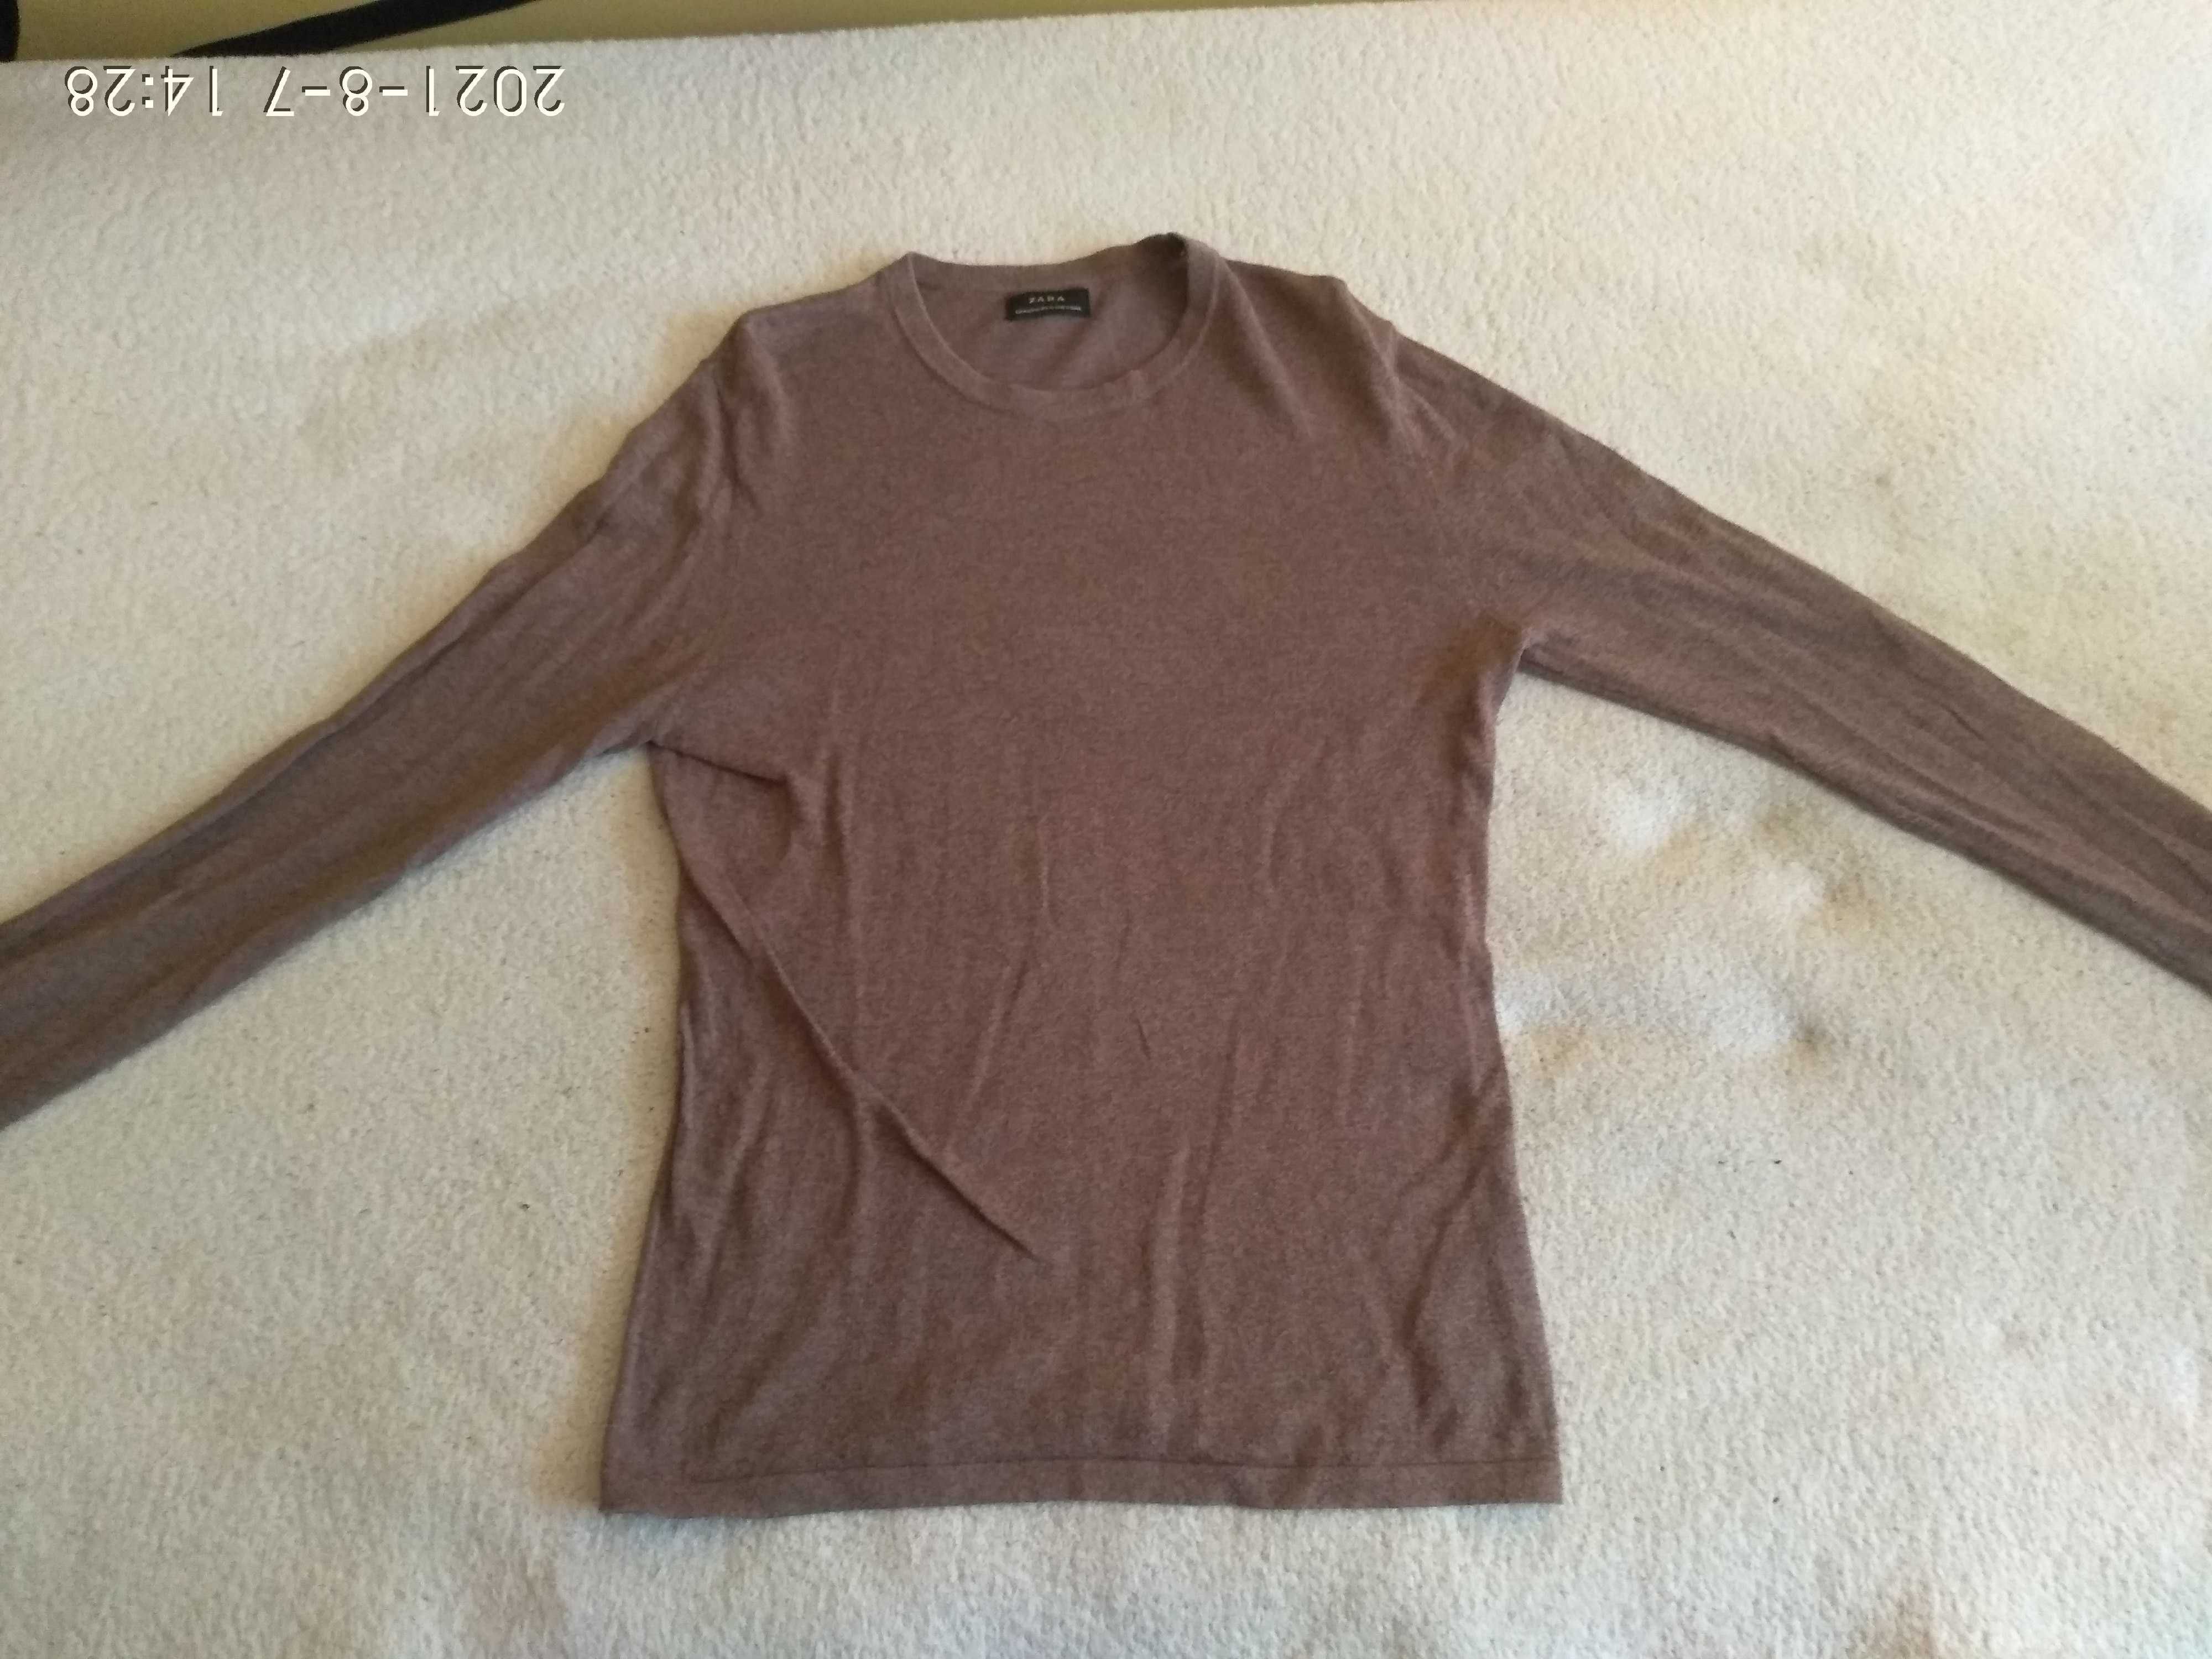 Sweter sweterek zara brązowy rozmiar 158-164 tanio